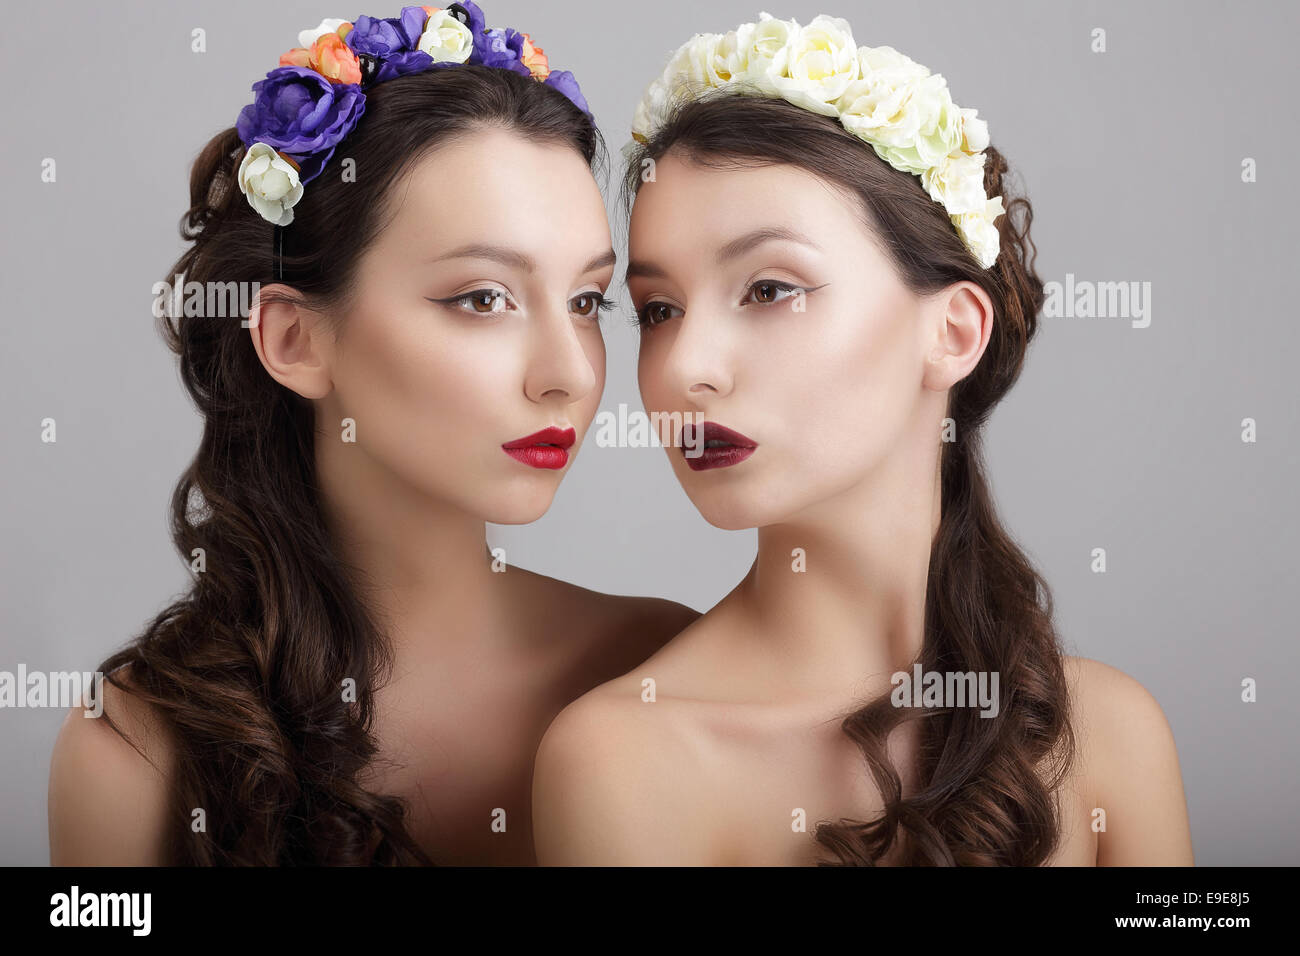 Inspiration.Deux femelles de style et des guirlandes de fleurs Banque D'Images